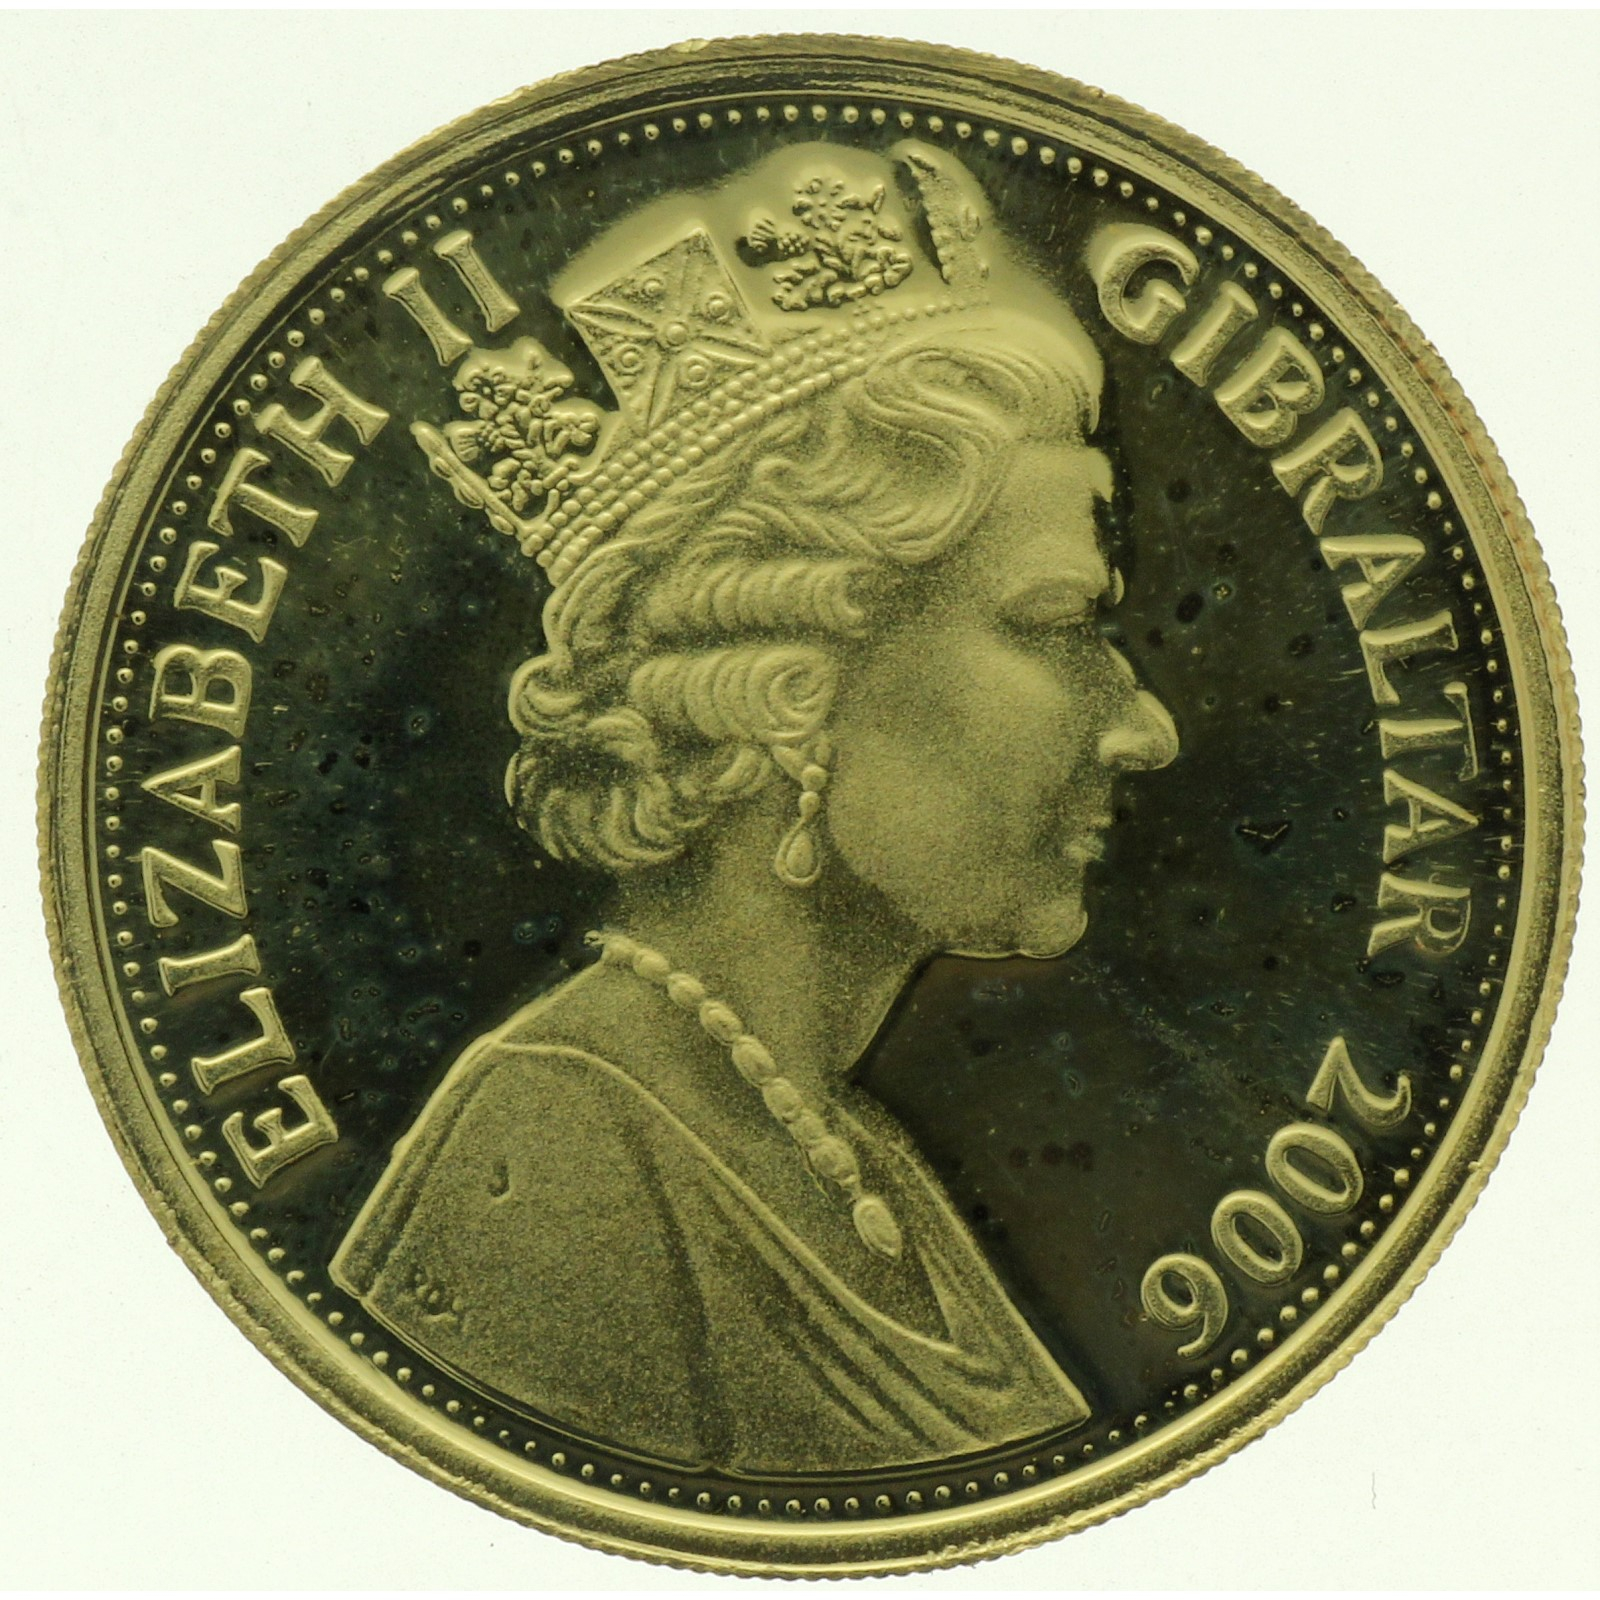 Gibraltar - 1 pound - 2006 - Glorious Years - 1/4oz